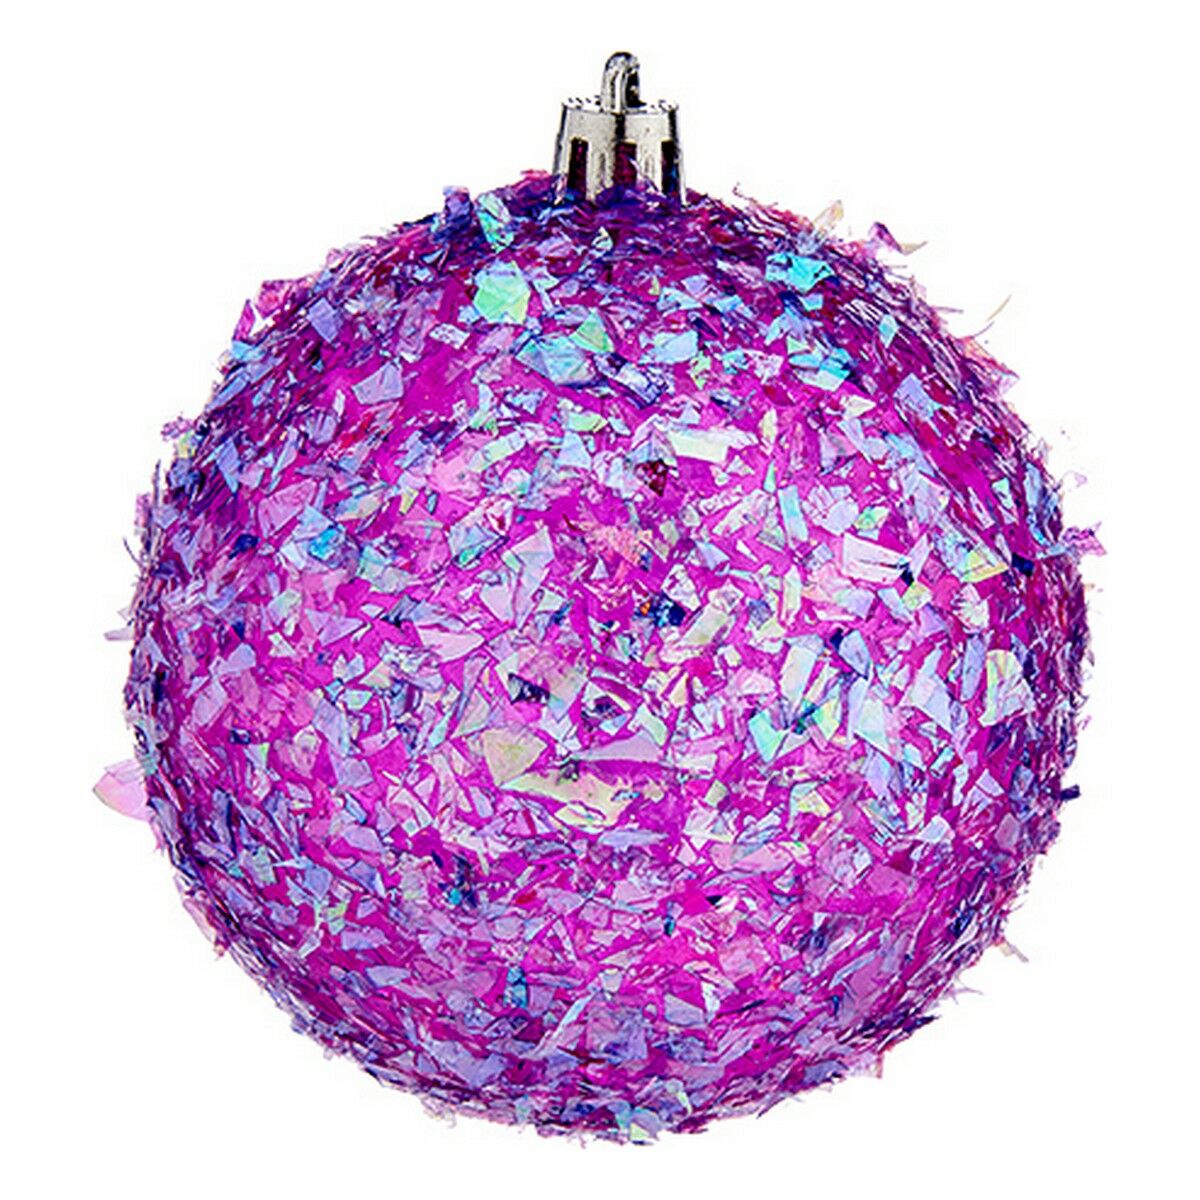 Boules de Noël Ø 8 cm Violet PVC